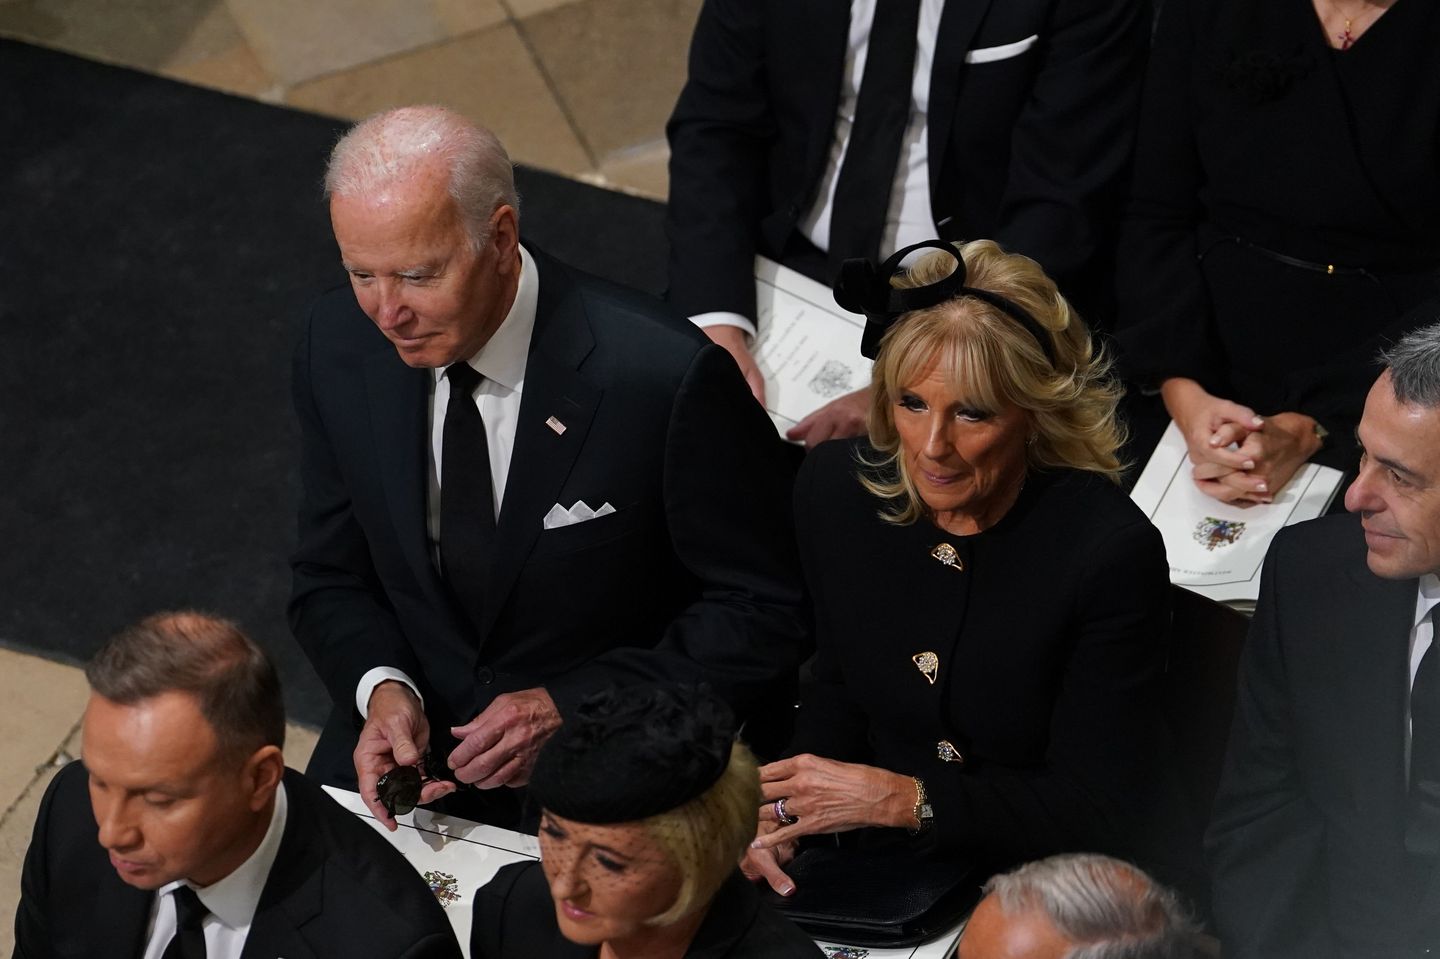 Trump, Biden'ın oturma pozisyonuyla, Kraliçe II. Elizabeth'in cenazesindeki statüsüyle alay ediyor